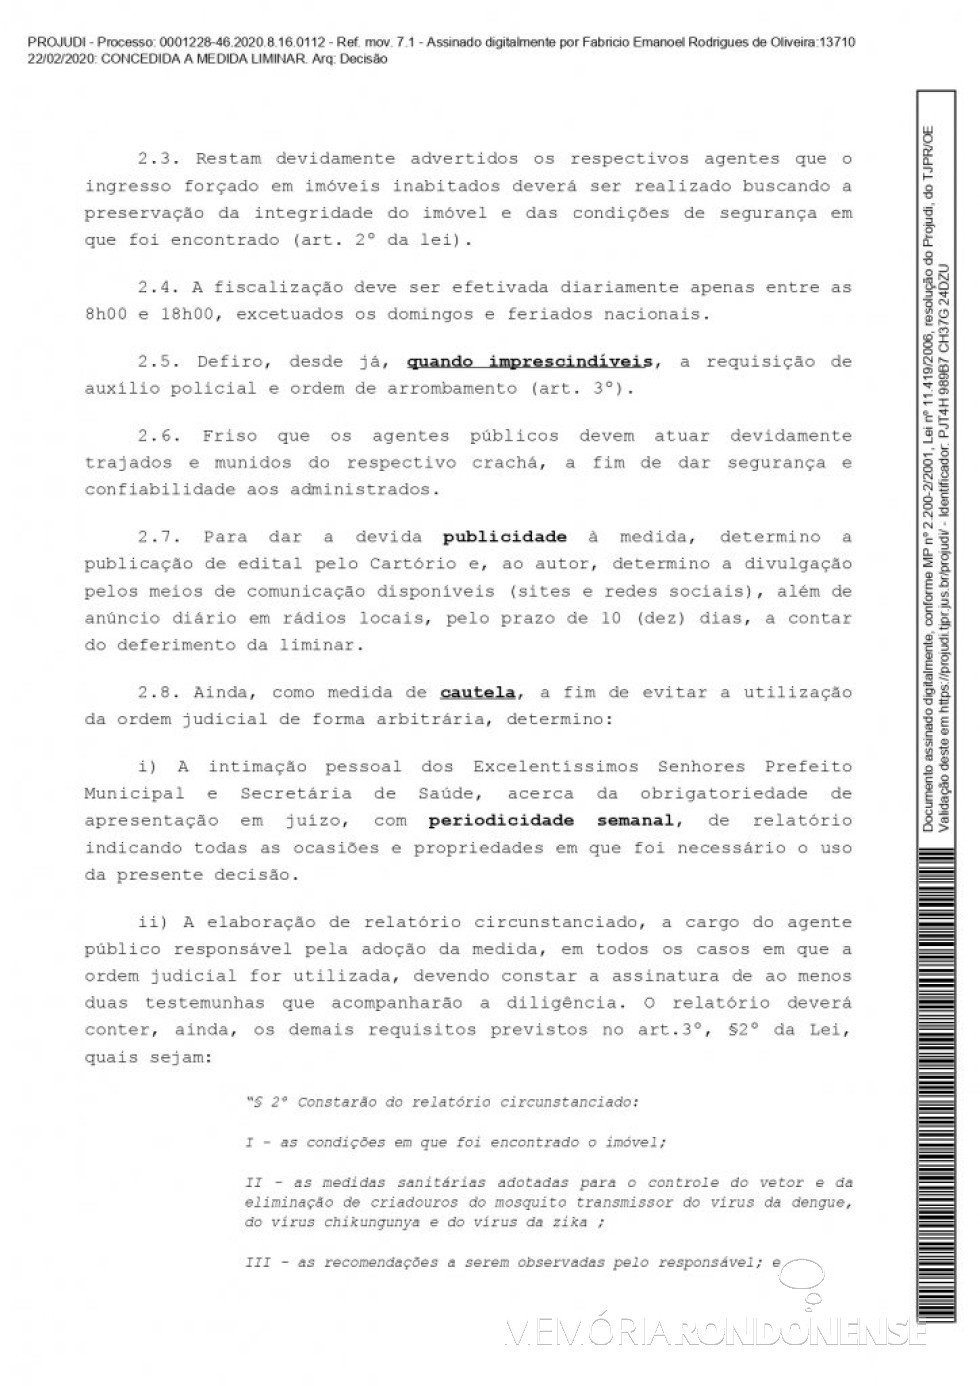 || Página 4 da liminar concedida pelo juiz de direito substituto Fabrício Emanoel Rodrigues de Oliveira em favor do município de Marechal Cândido Rondon, em fevereiro de 2020.
Imagem: Acervo Projeto Memória Rondonense - FOTO 13 - 